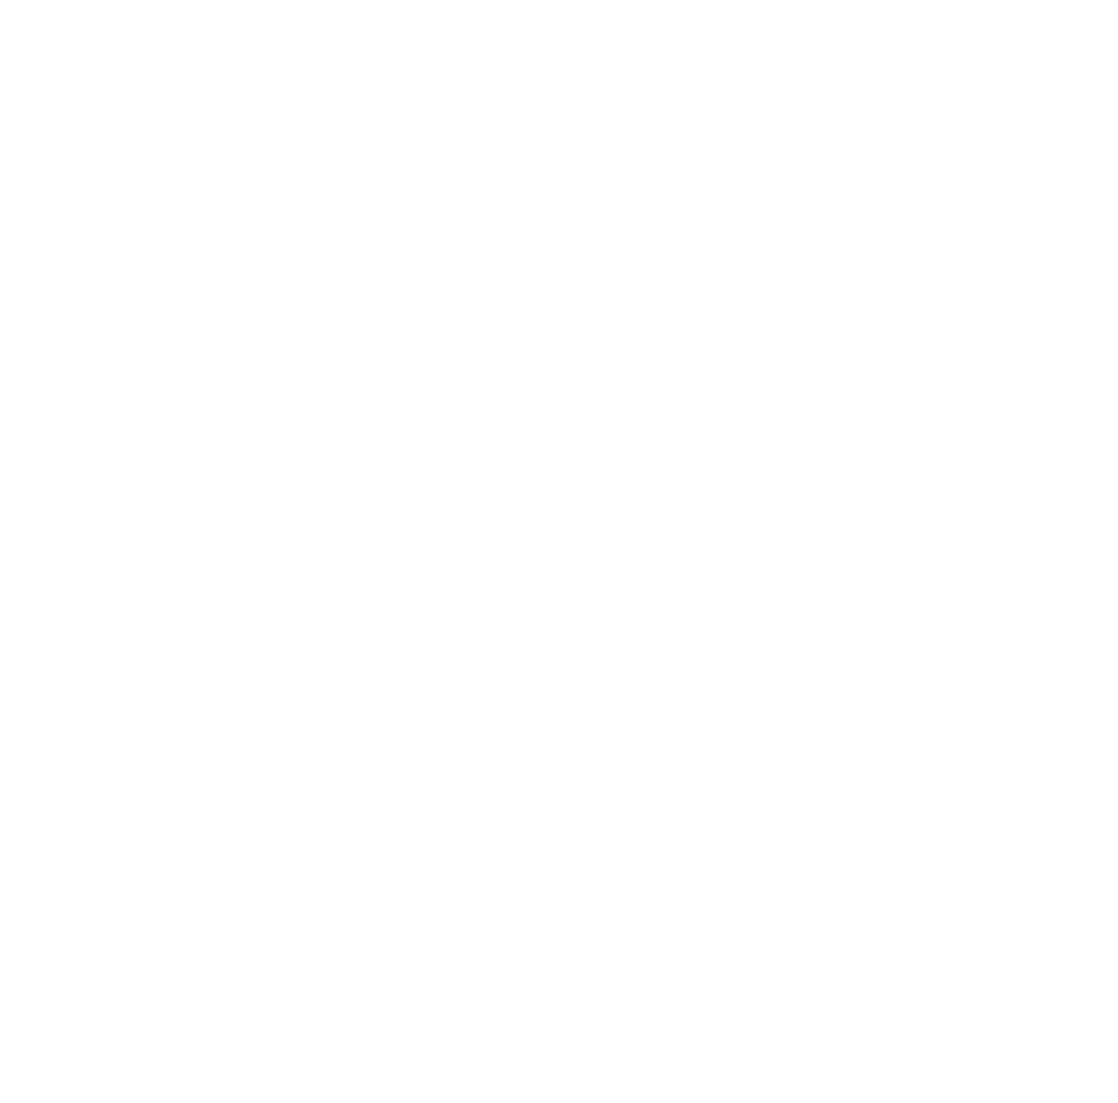 Nuri Korustan Logo